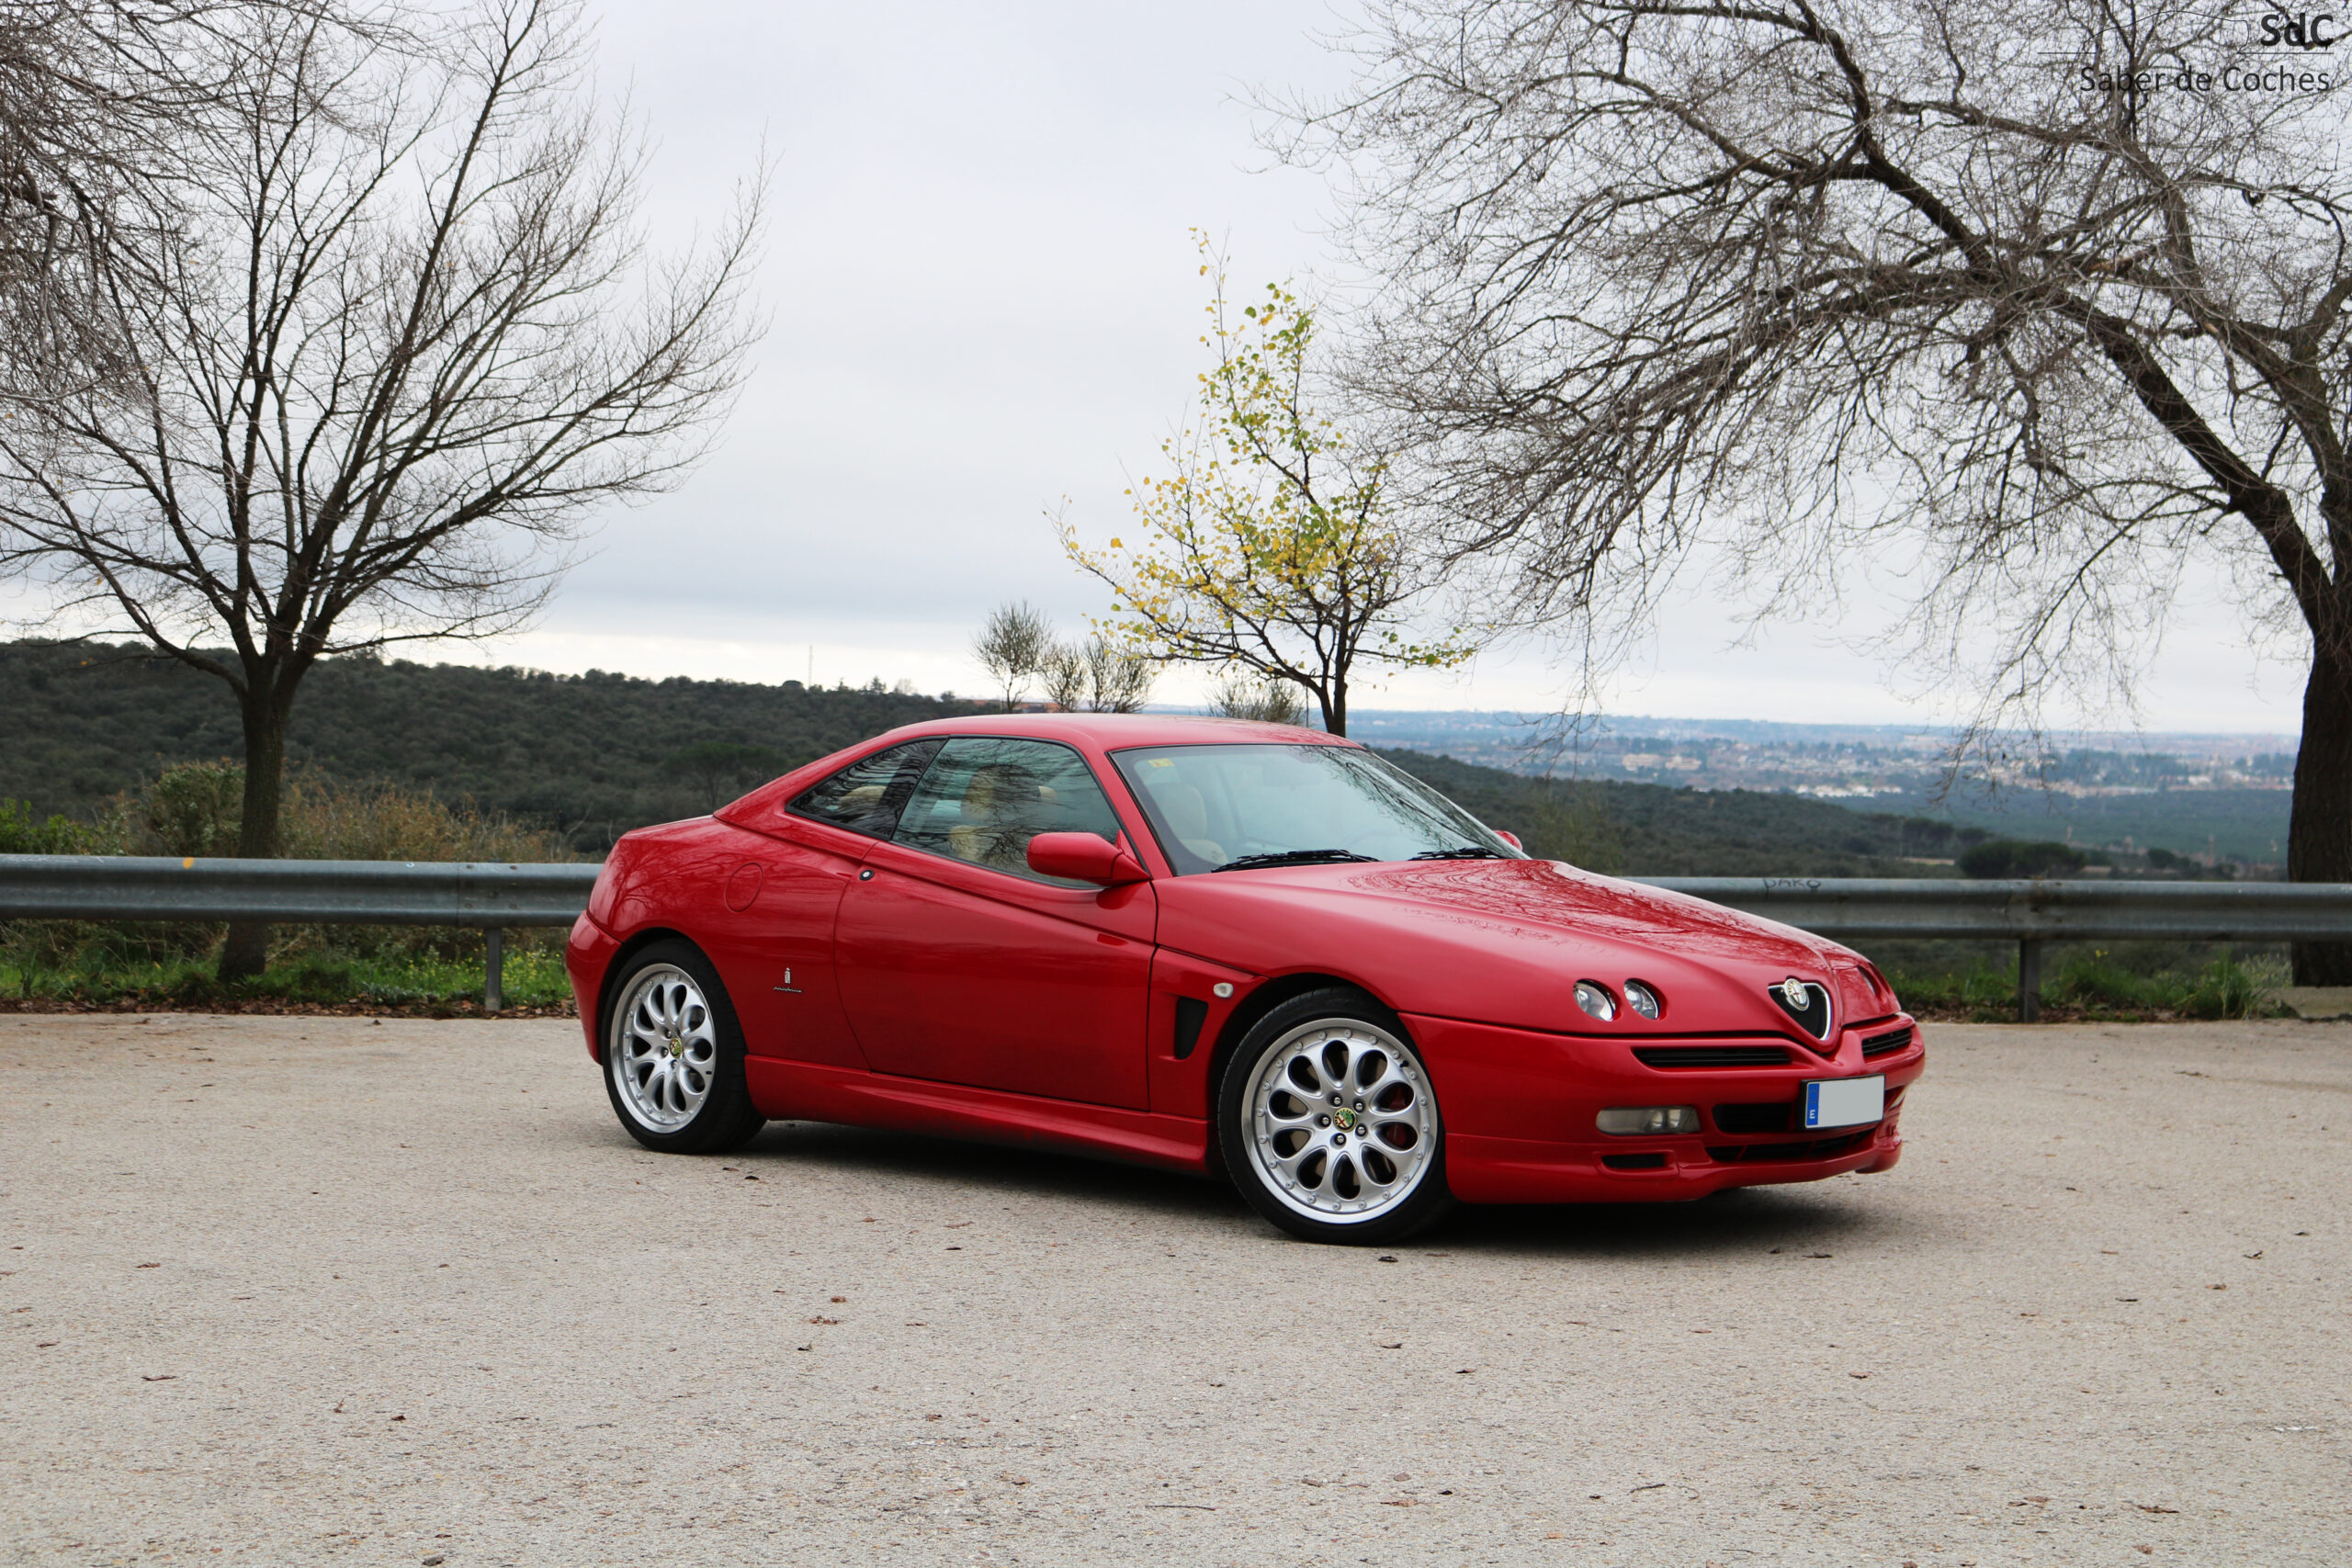 PRUEBA: Alfa Romeo Gtv 3.0 V6 24v (2002)